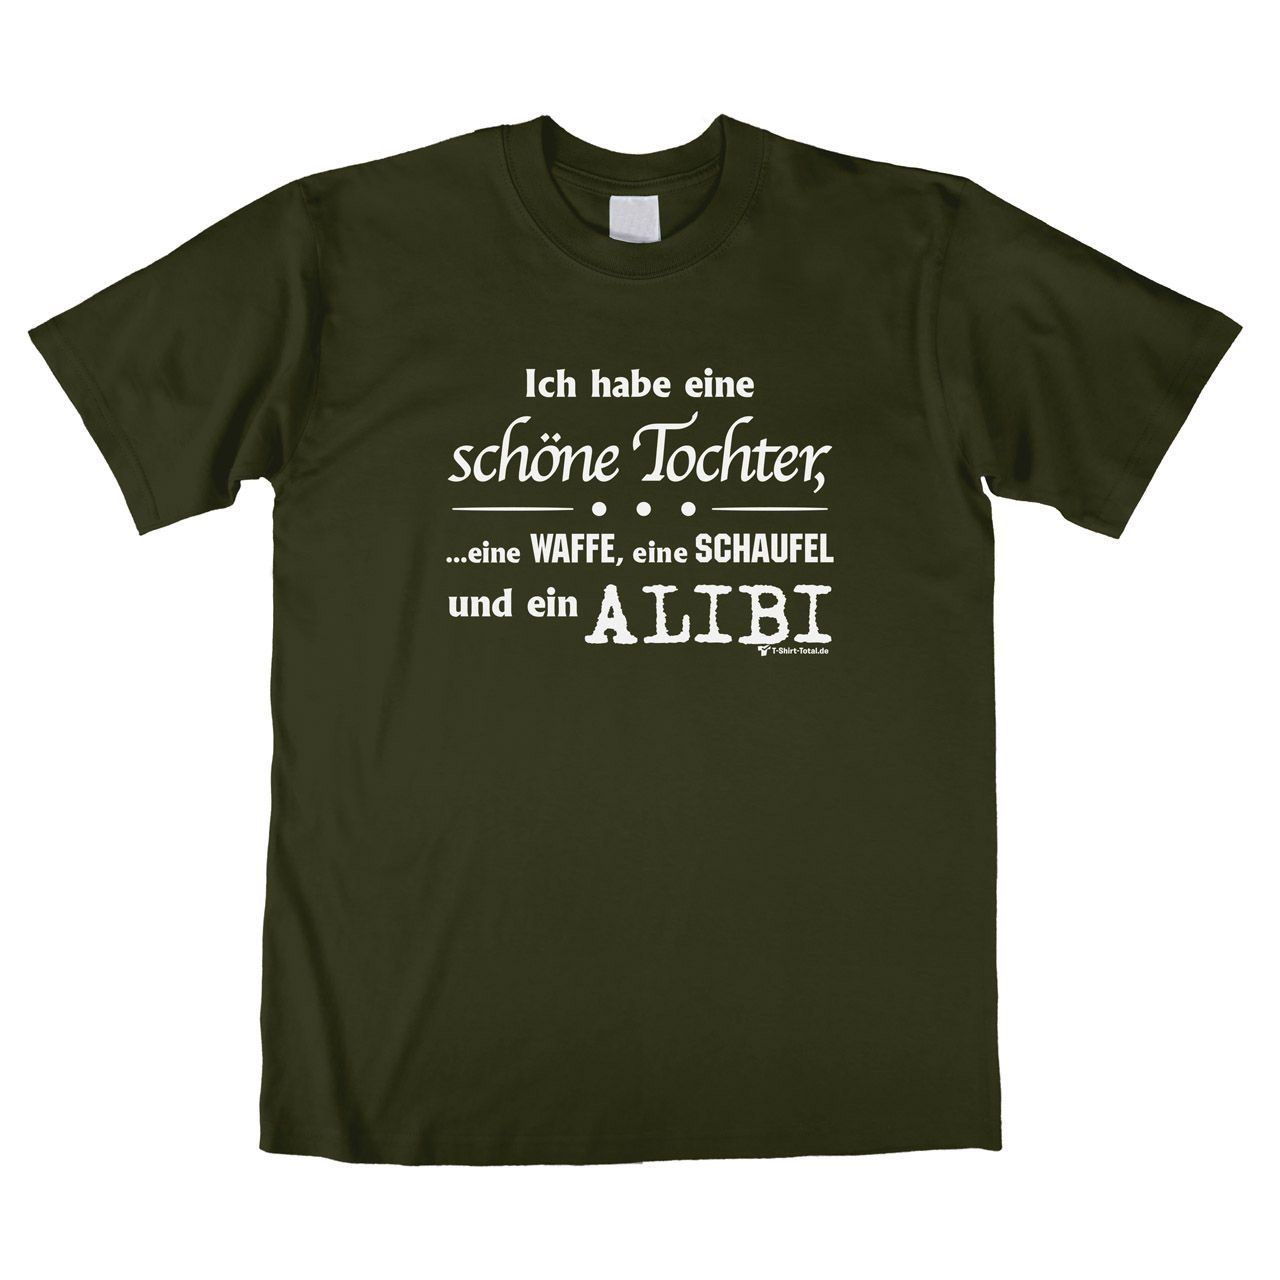 Alibi Unisex T-Shirt khaki Large